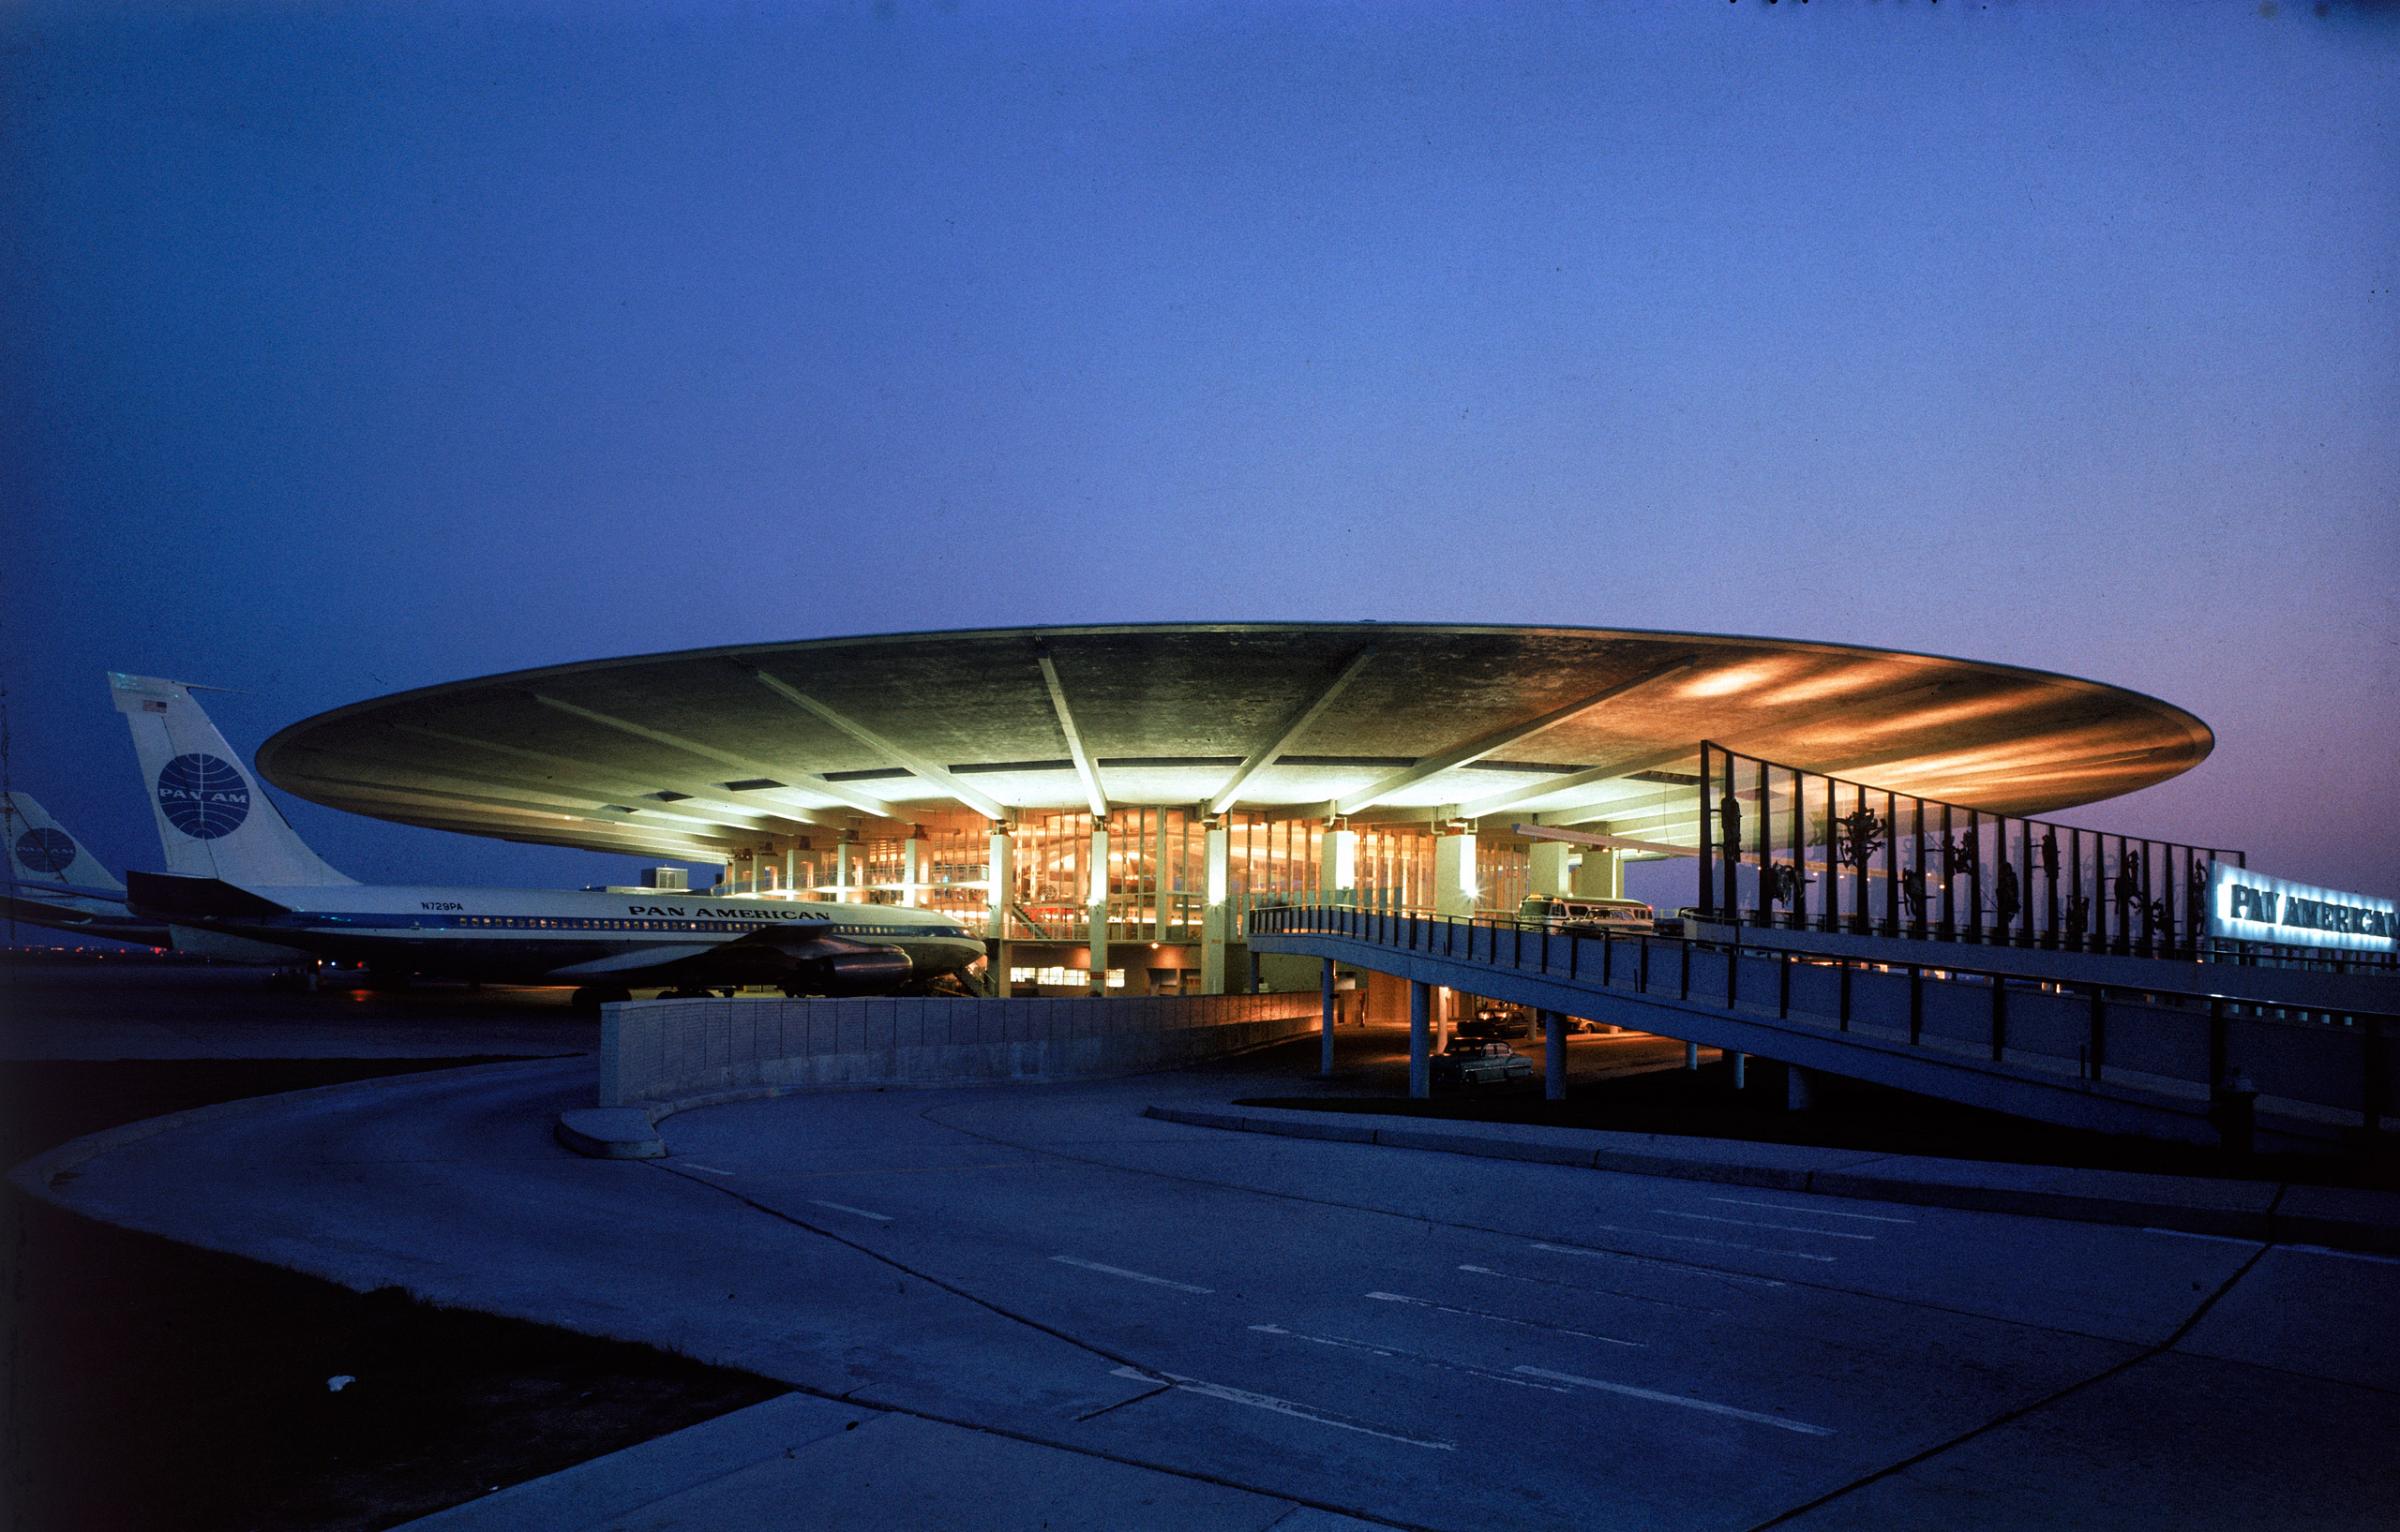 Idlewild Airport, 1961